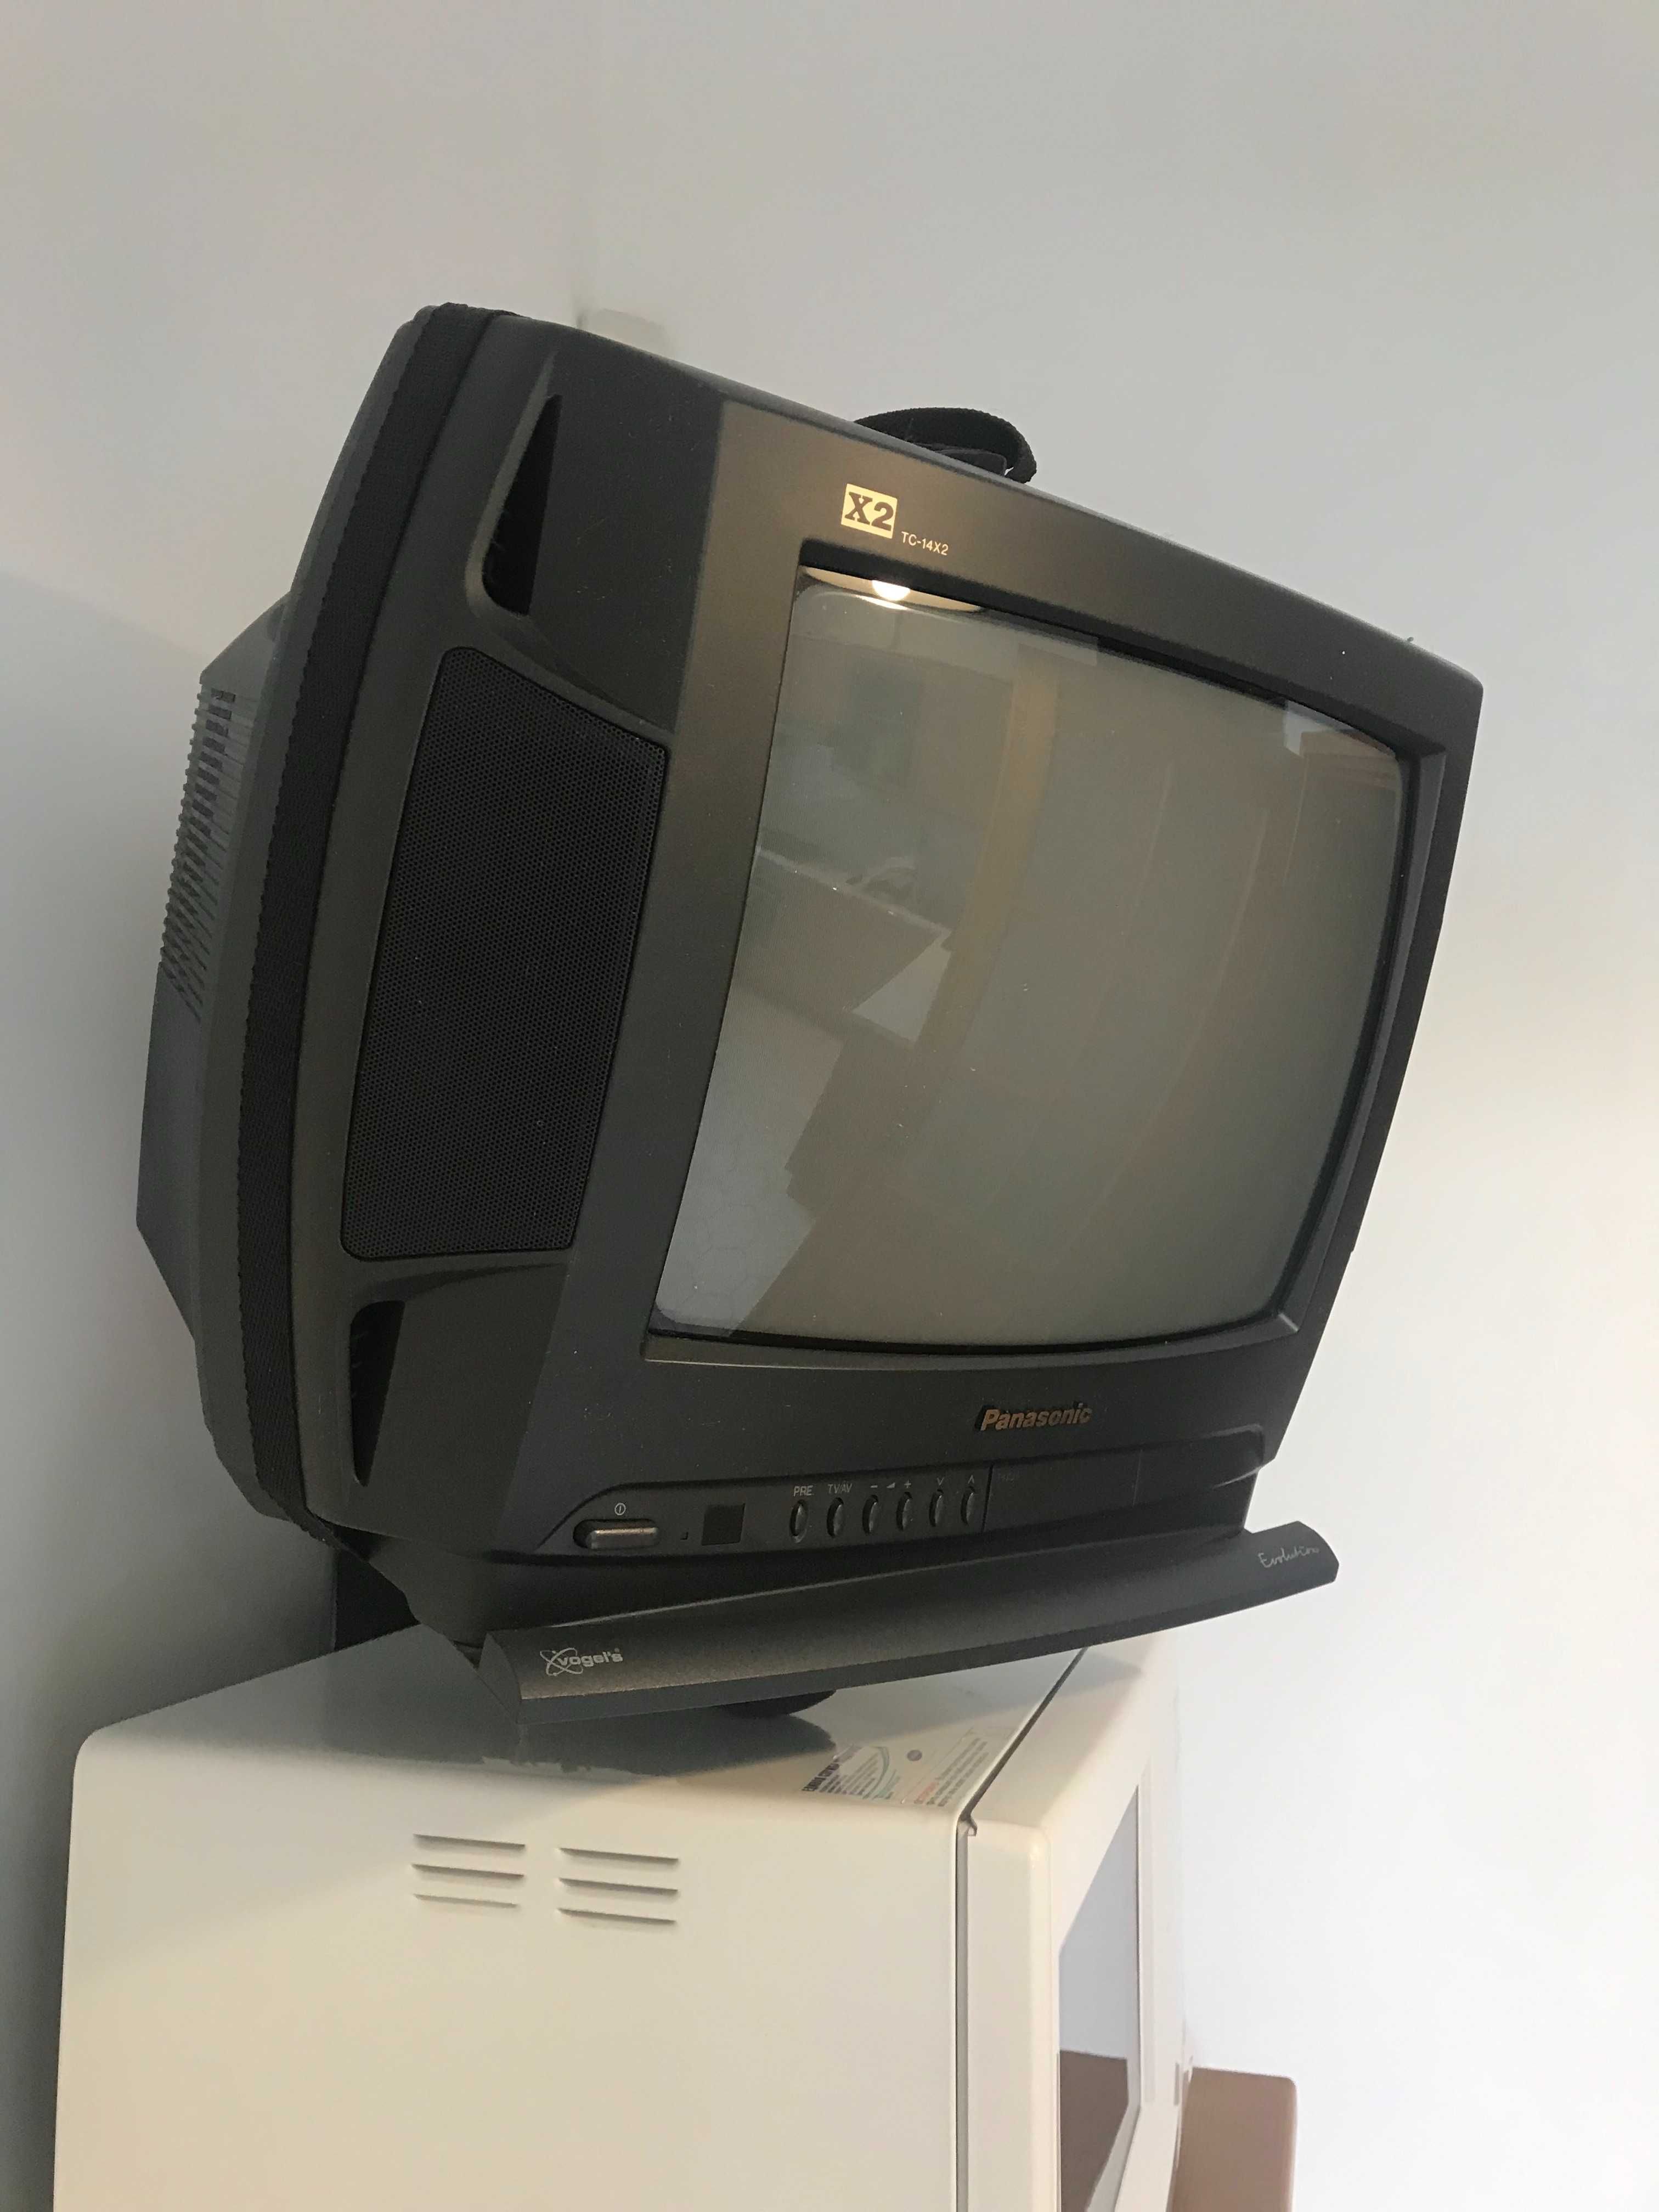 Телевизор Panasonic, аналоговый, с подставкой для крепления на стену.